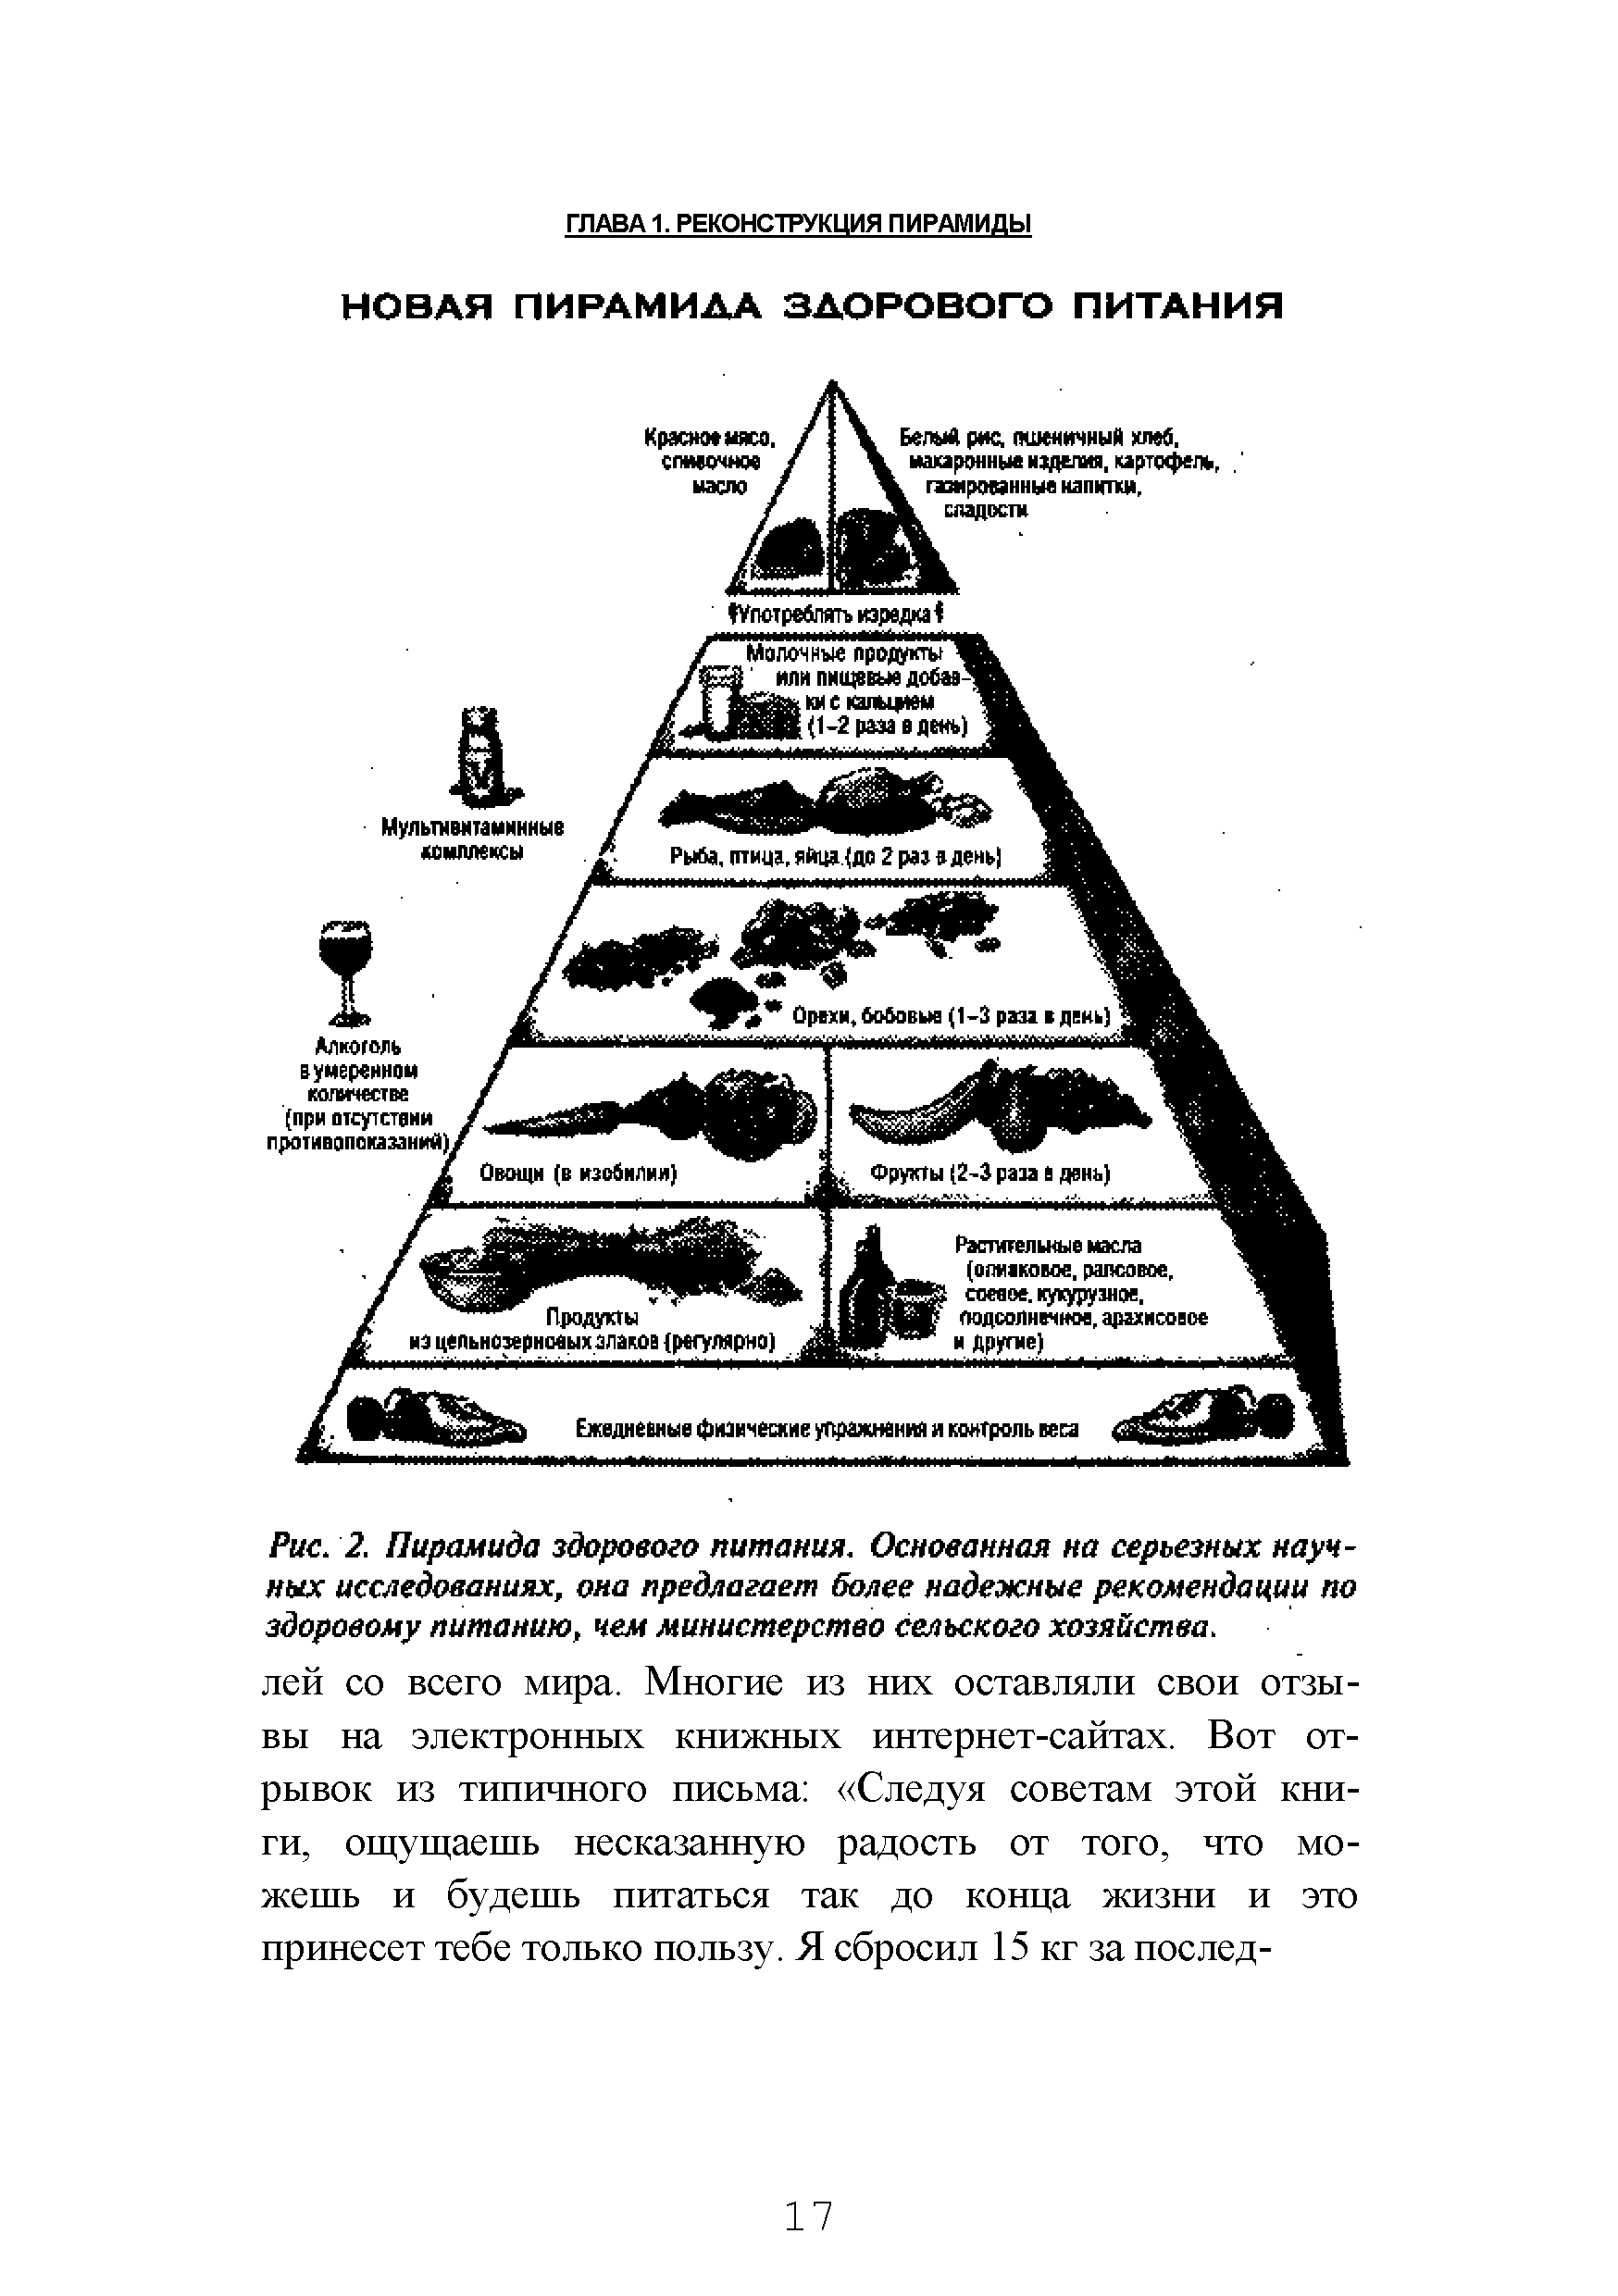 Рис. 2. Пирамида здорового питания. Основанная на серьезных научных исследованиях, она предлагает более надежные рекомендации по здоровому питанию, чем министерство сельского хозяйства.